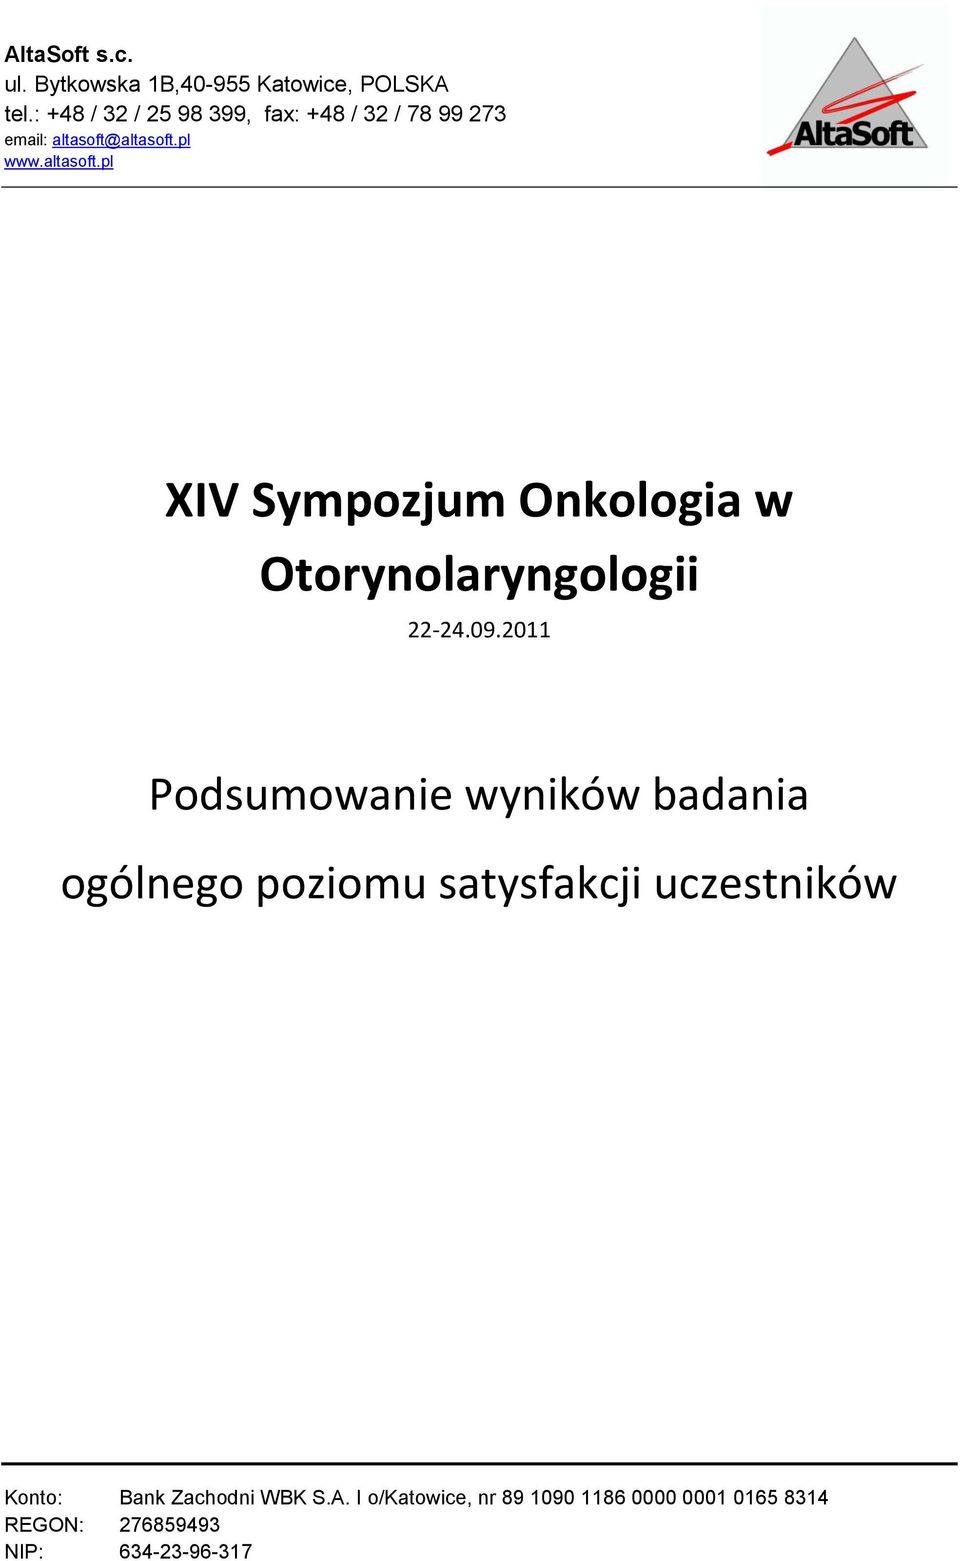 altasoft.pl www.altasoft.pl XIV Sympozjum Onkologia w Otorynolaryngologii 22-24.09.